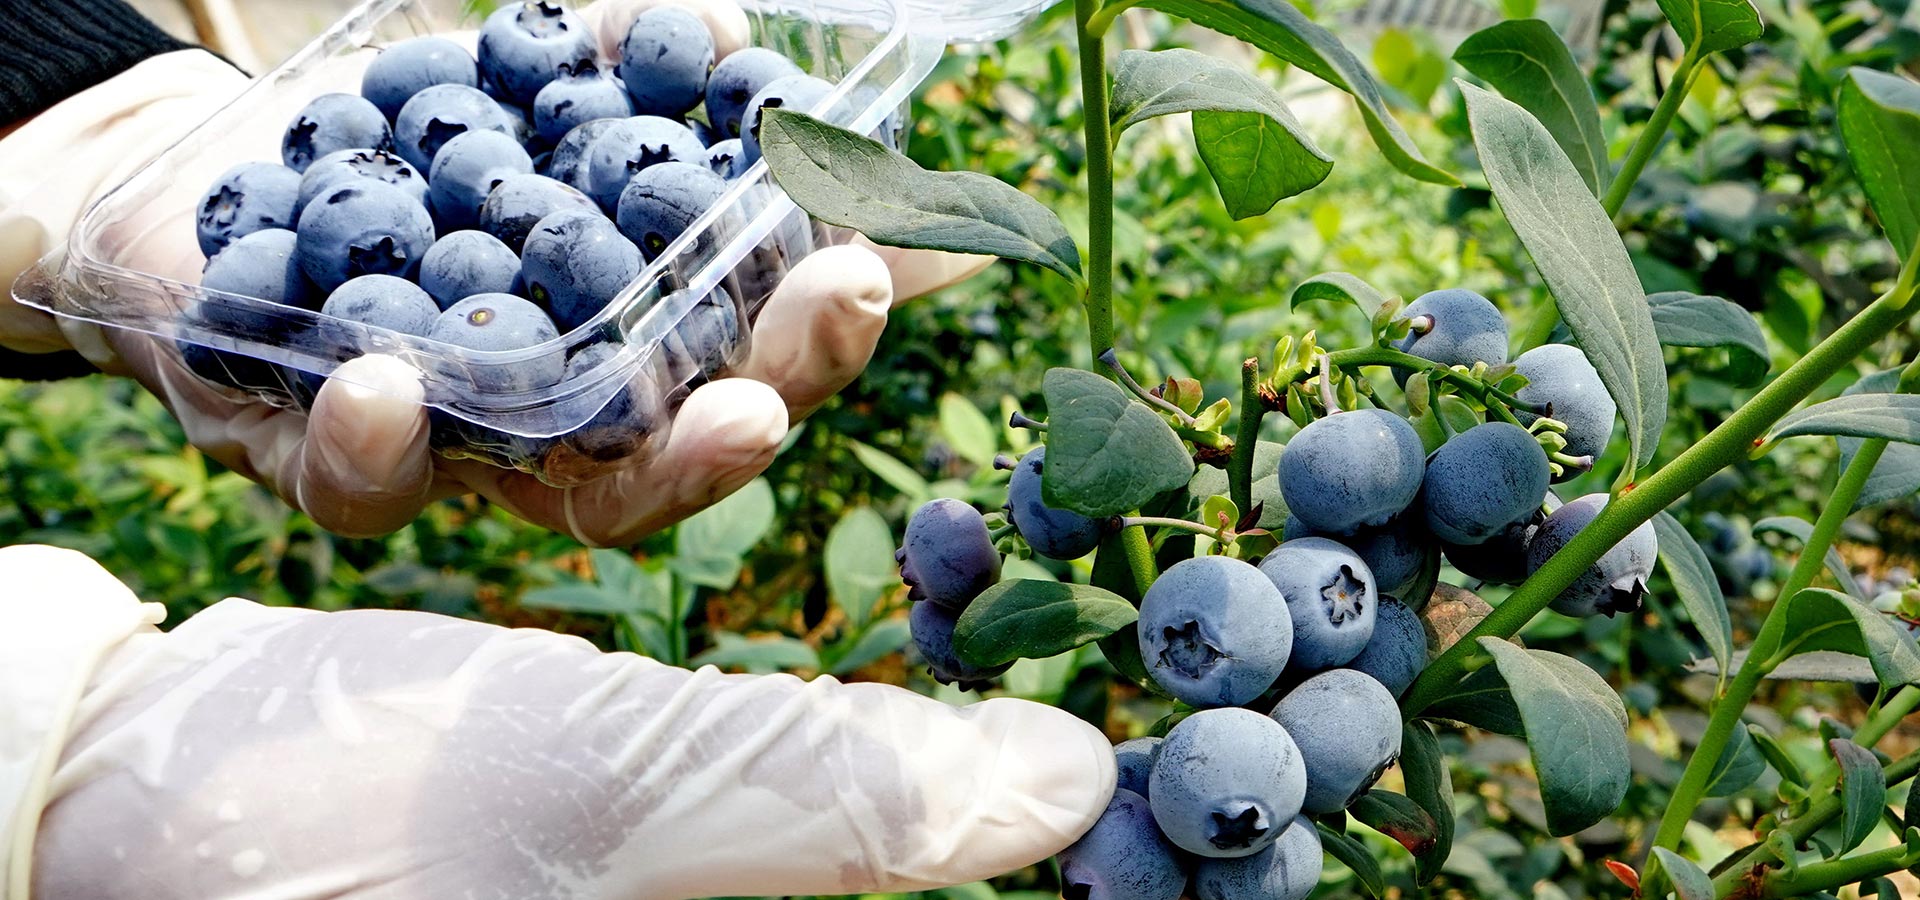 【高清圖集】小藍莓高收益